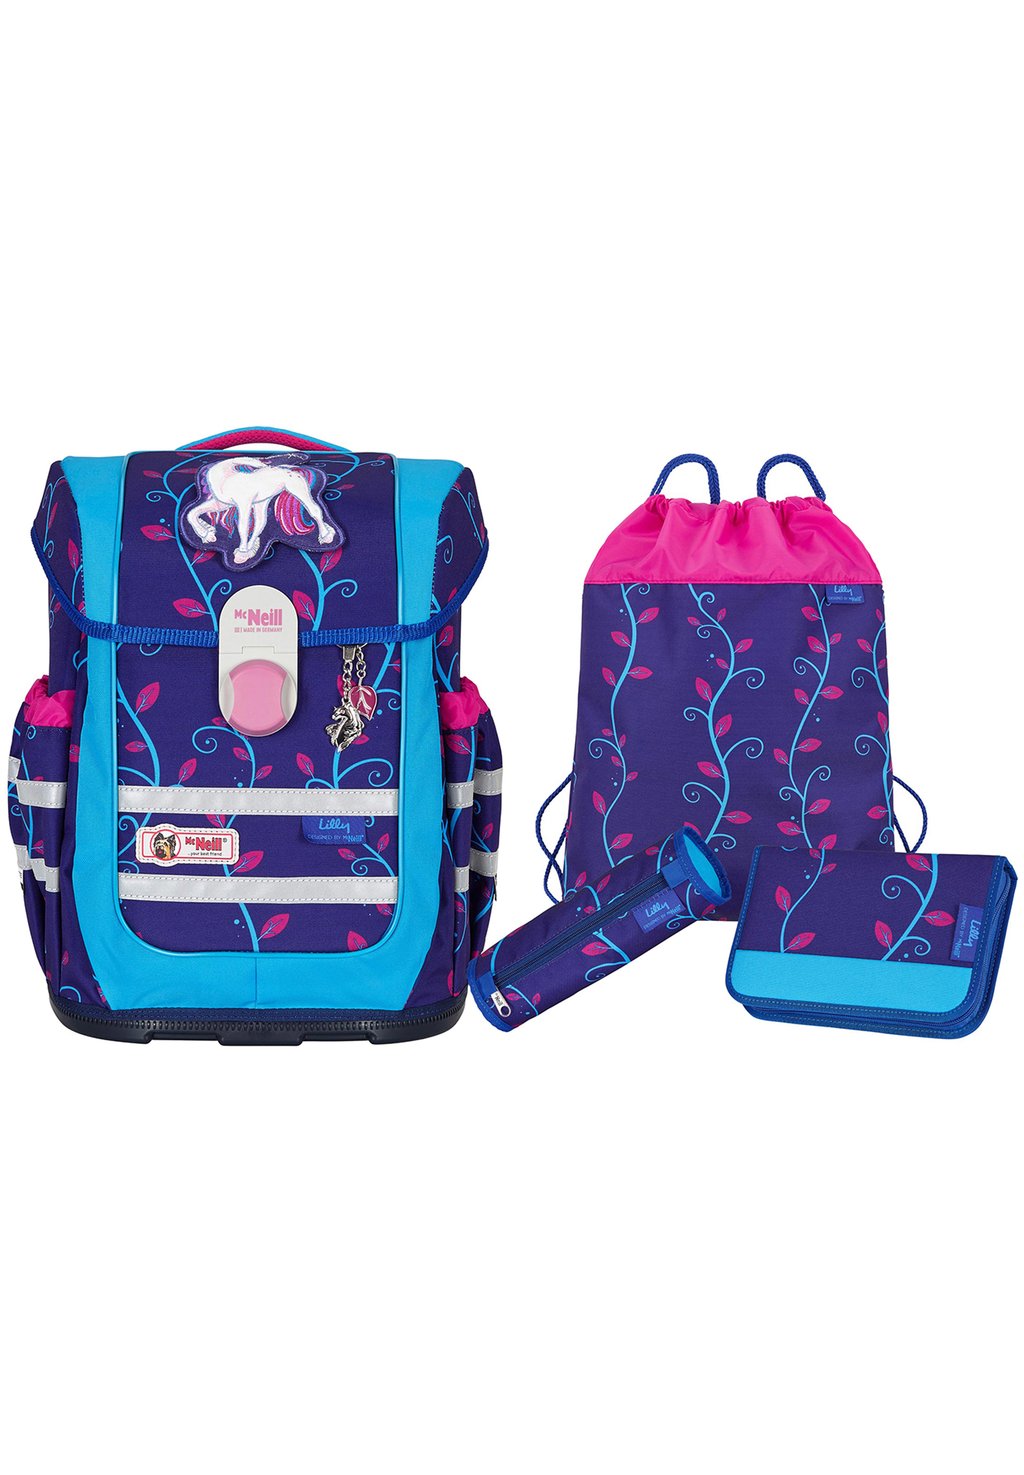 Комплект школьной сумки McNeill, цвет dark purple